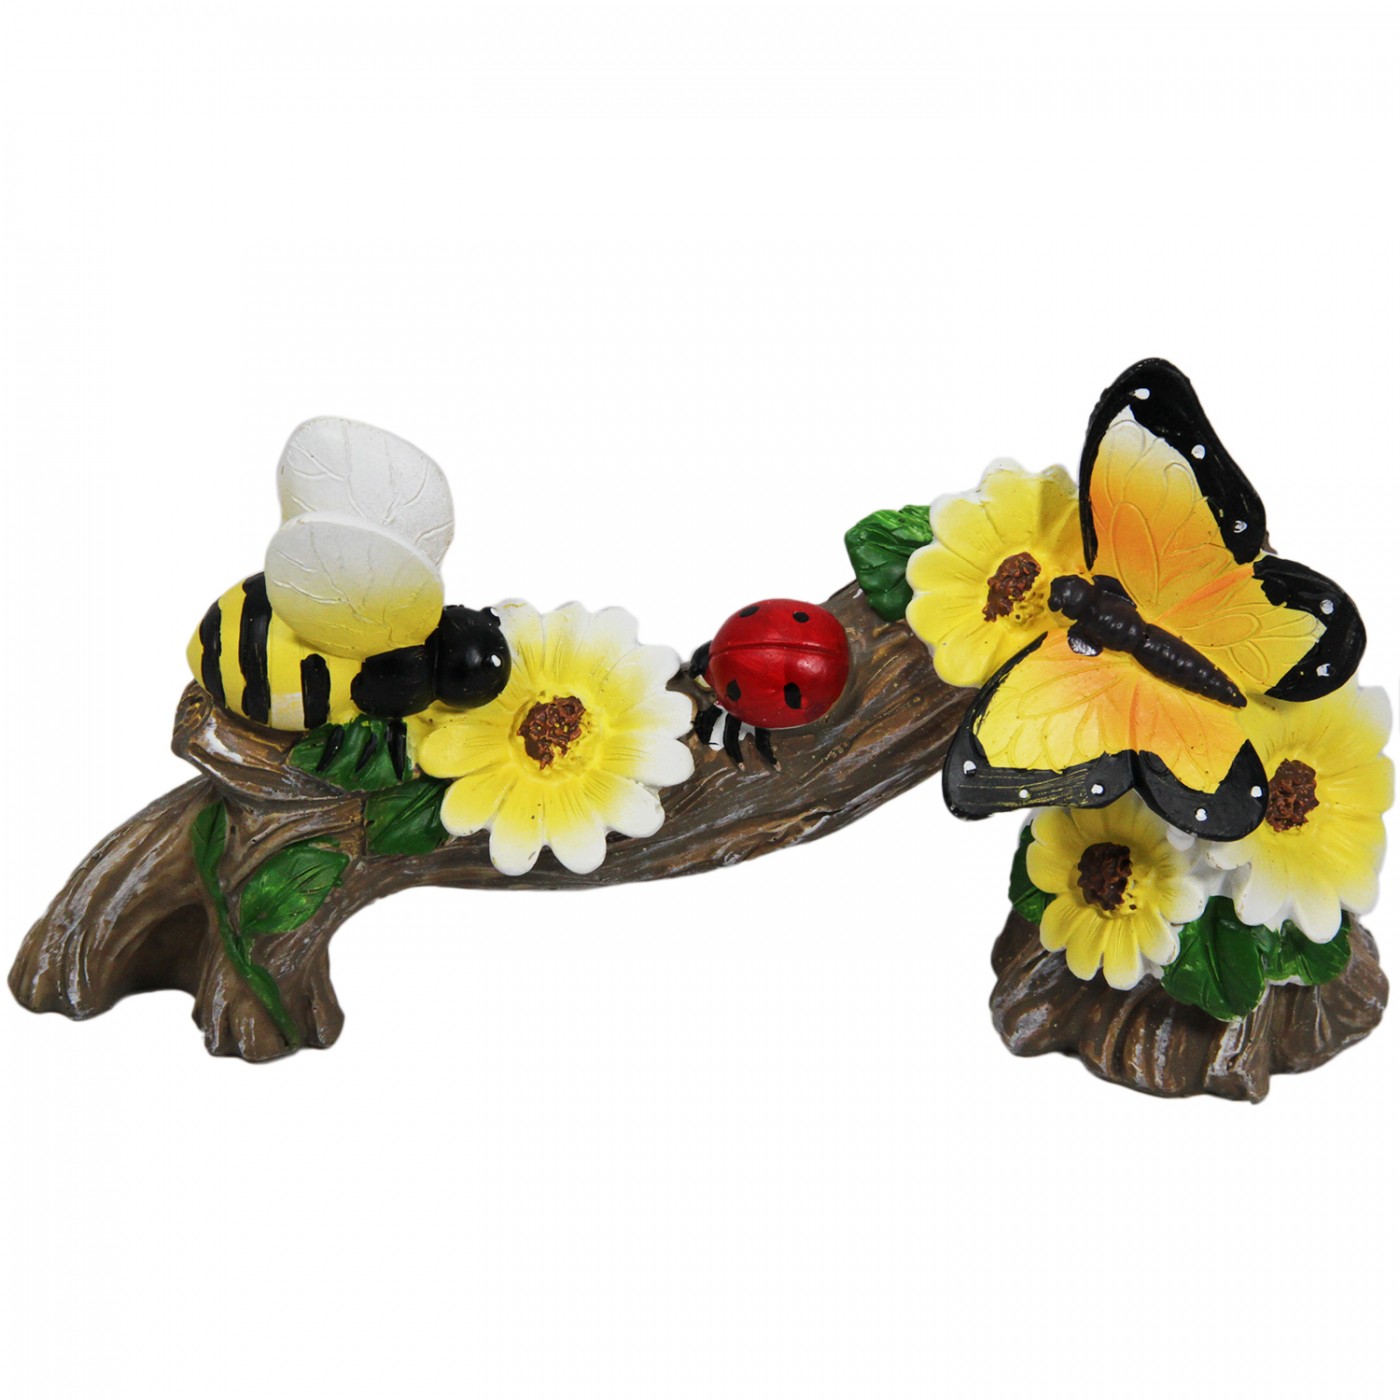 Figurka motyl pszczoła ogrodowa stojąca wiosenna